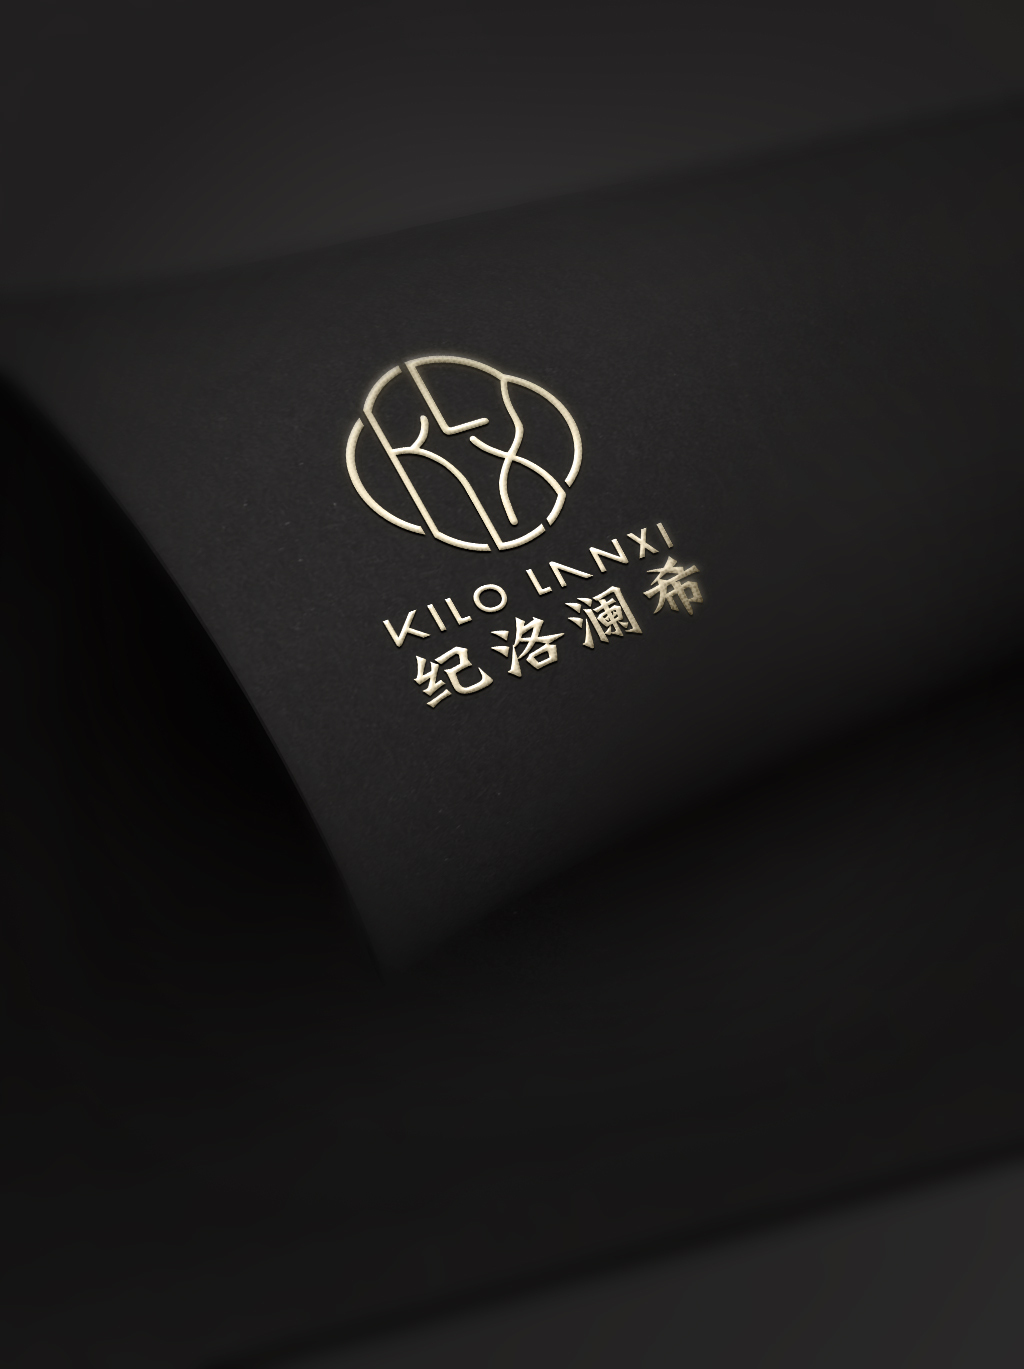 美容面膜品牌logo与系列包装设计图0